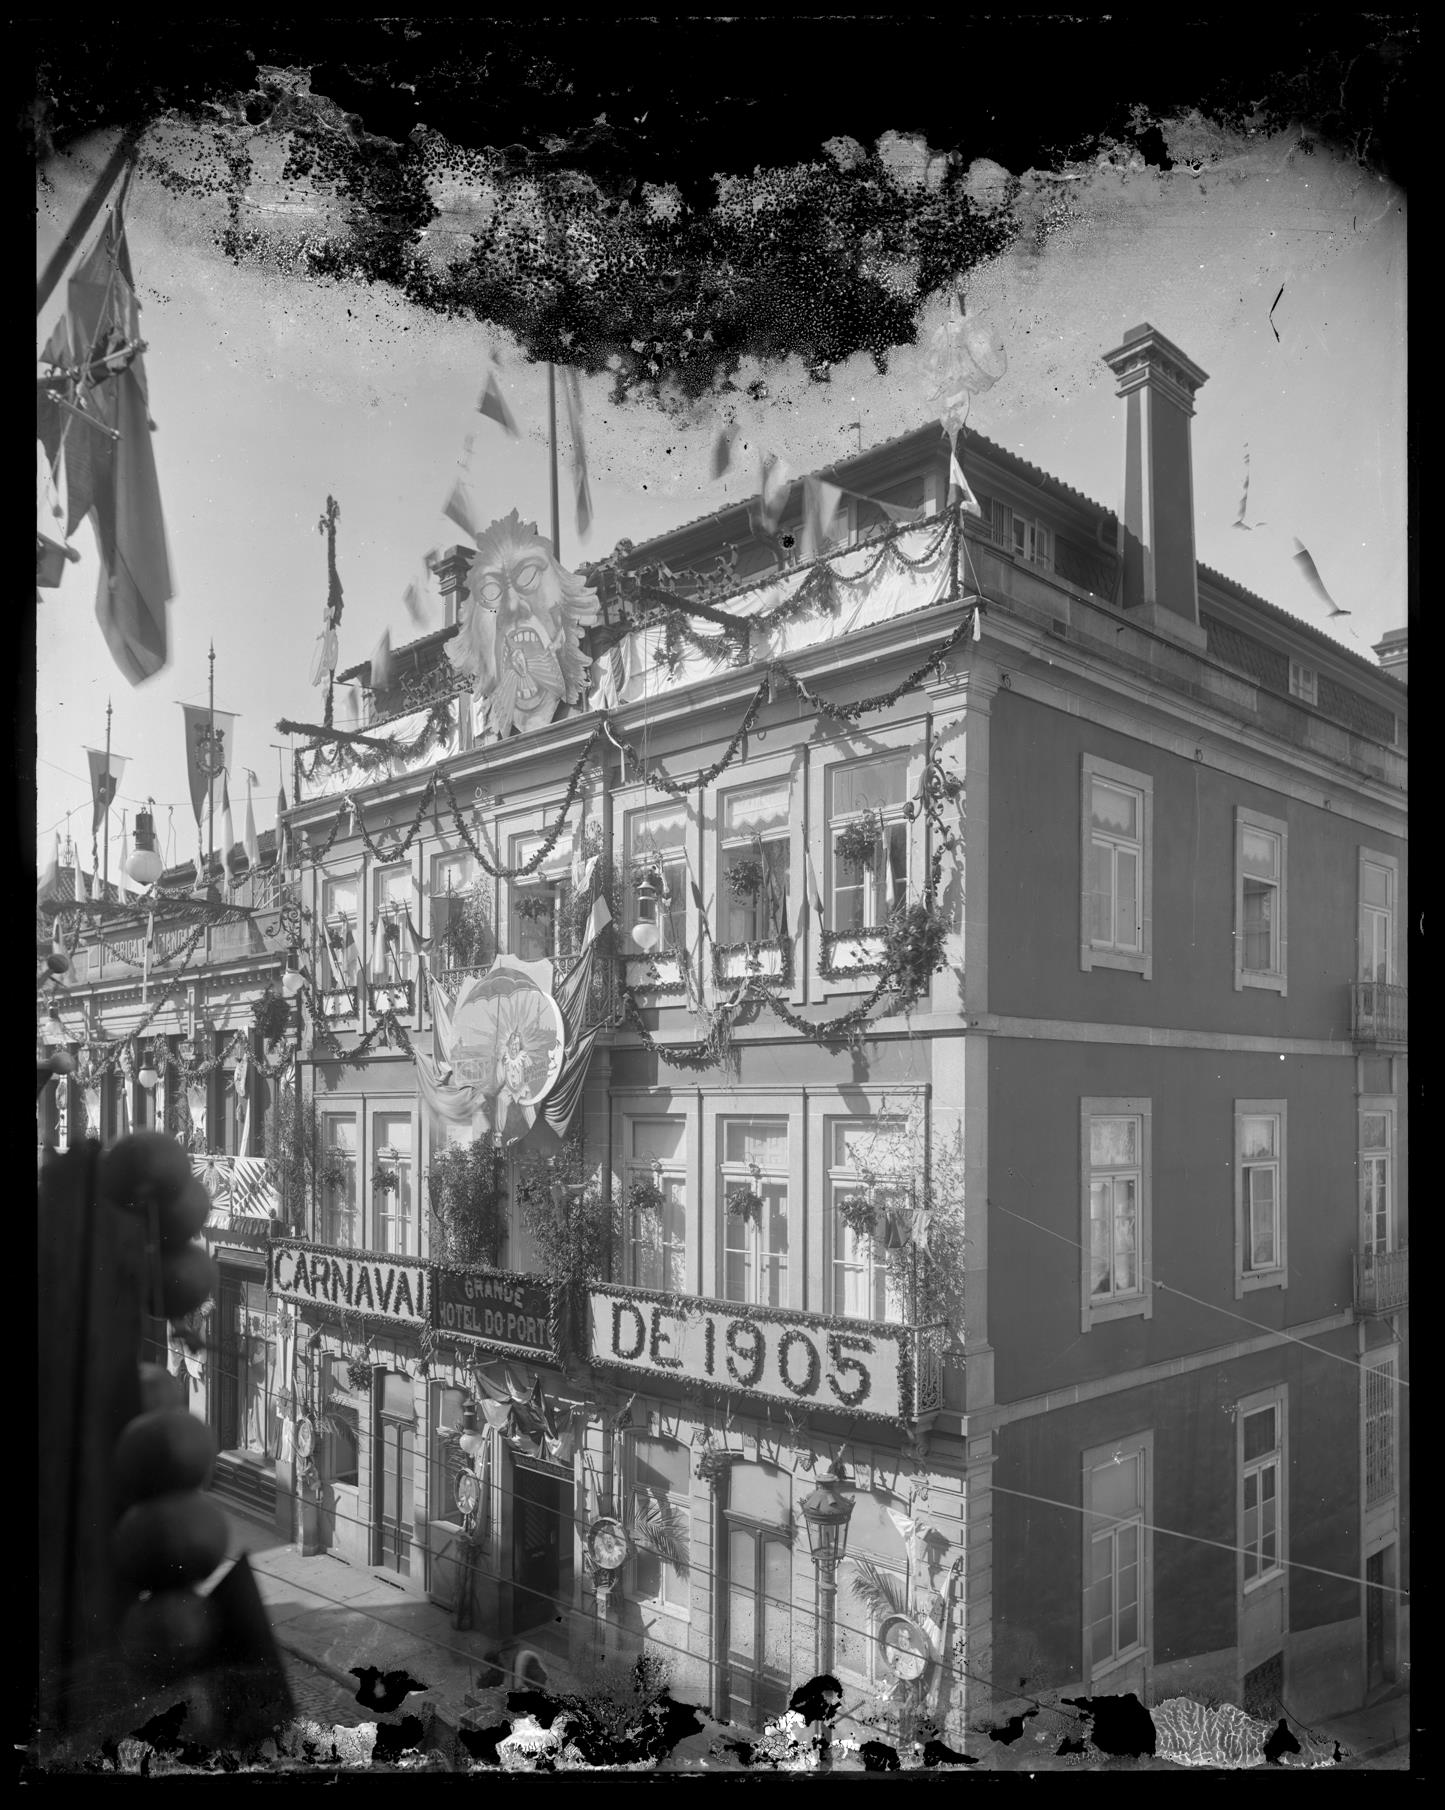 Carnaval de 1905 : Grande Hotel do Porto